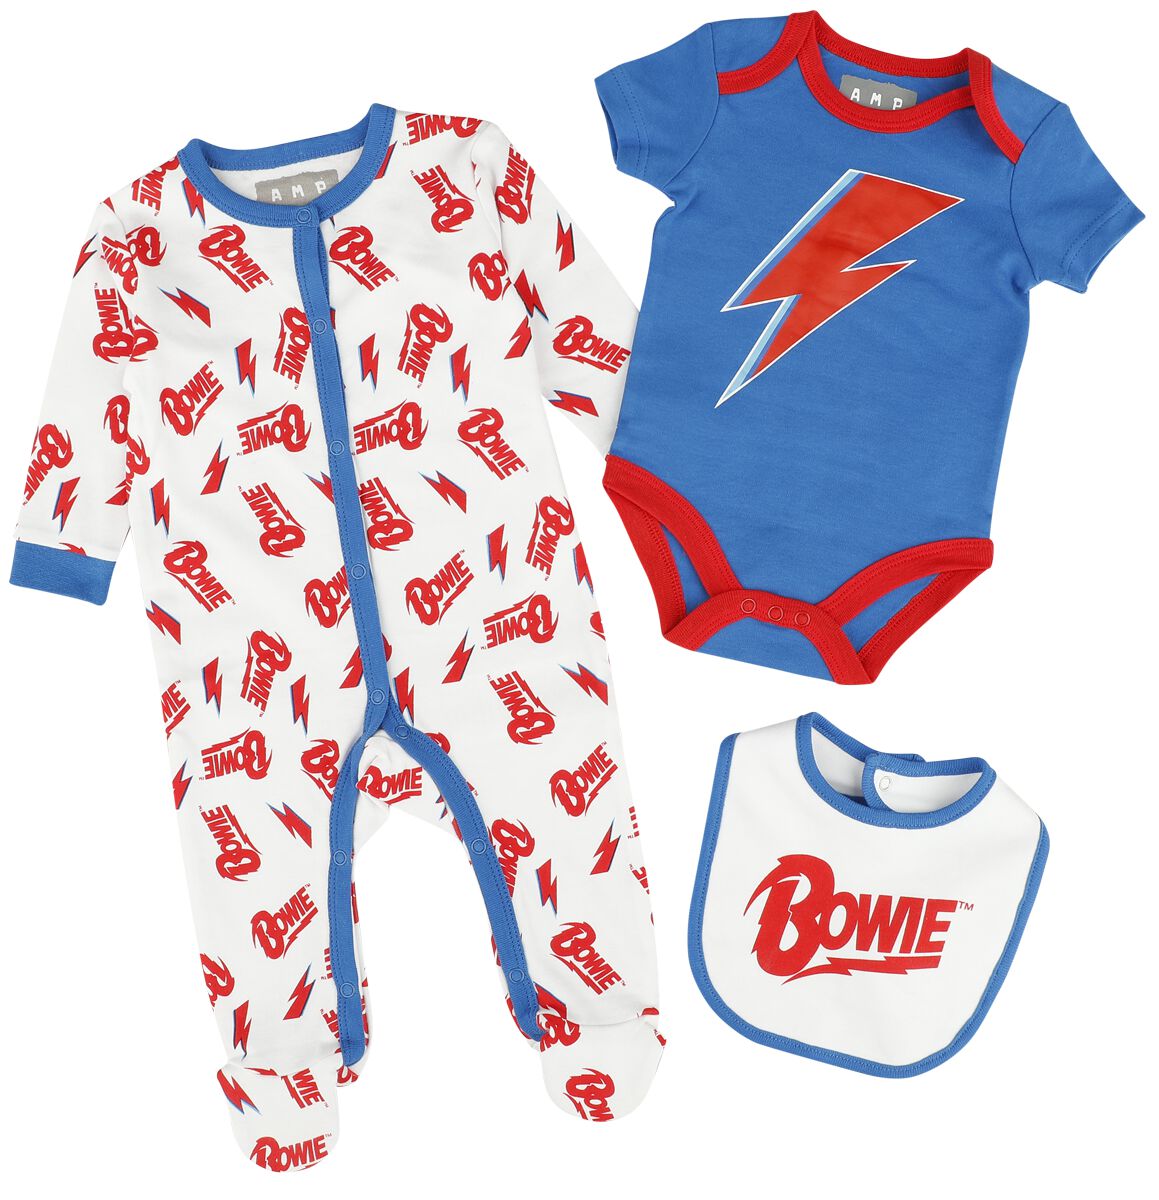 David Bowie Set für Babys - Amplified Collection - Baby Set - für Mädchen & Jungen - multicolor  - Lizenziertes Merchandise!